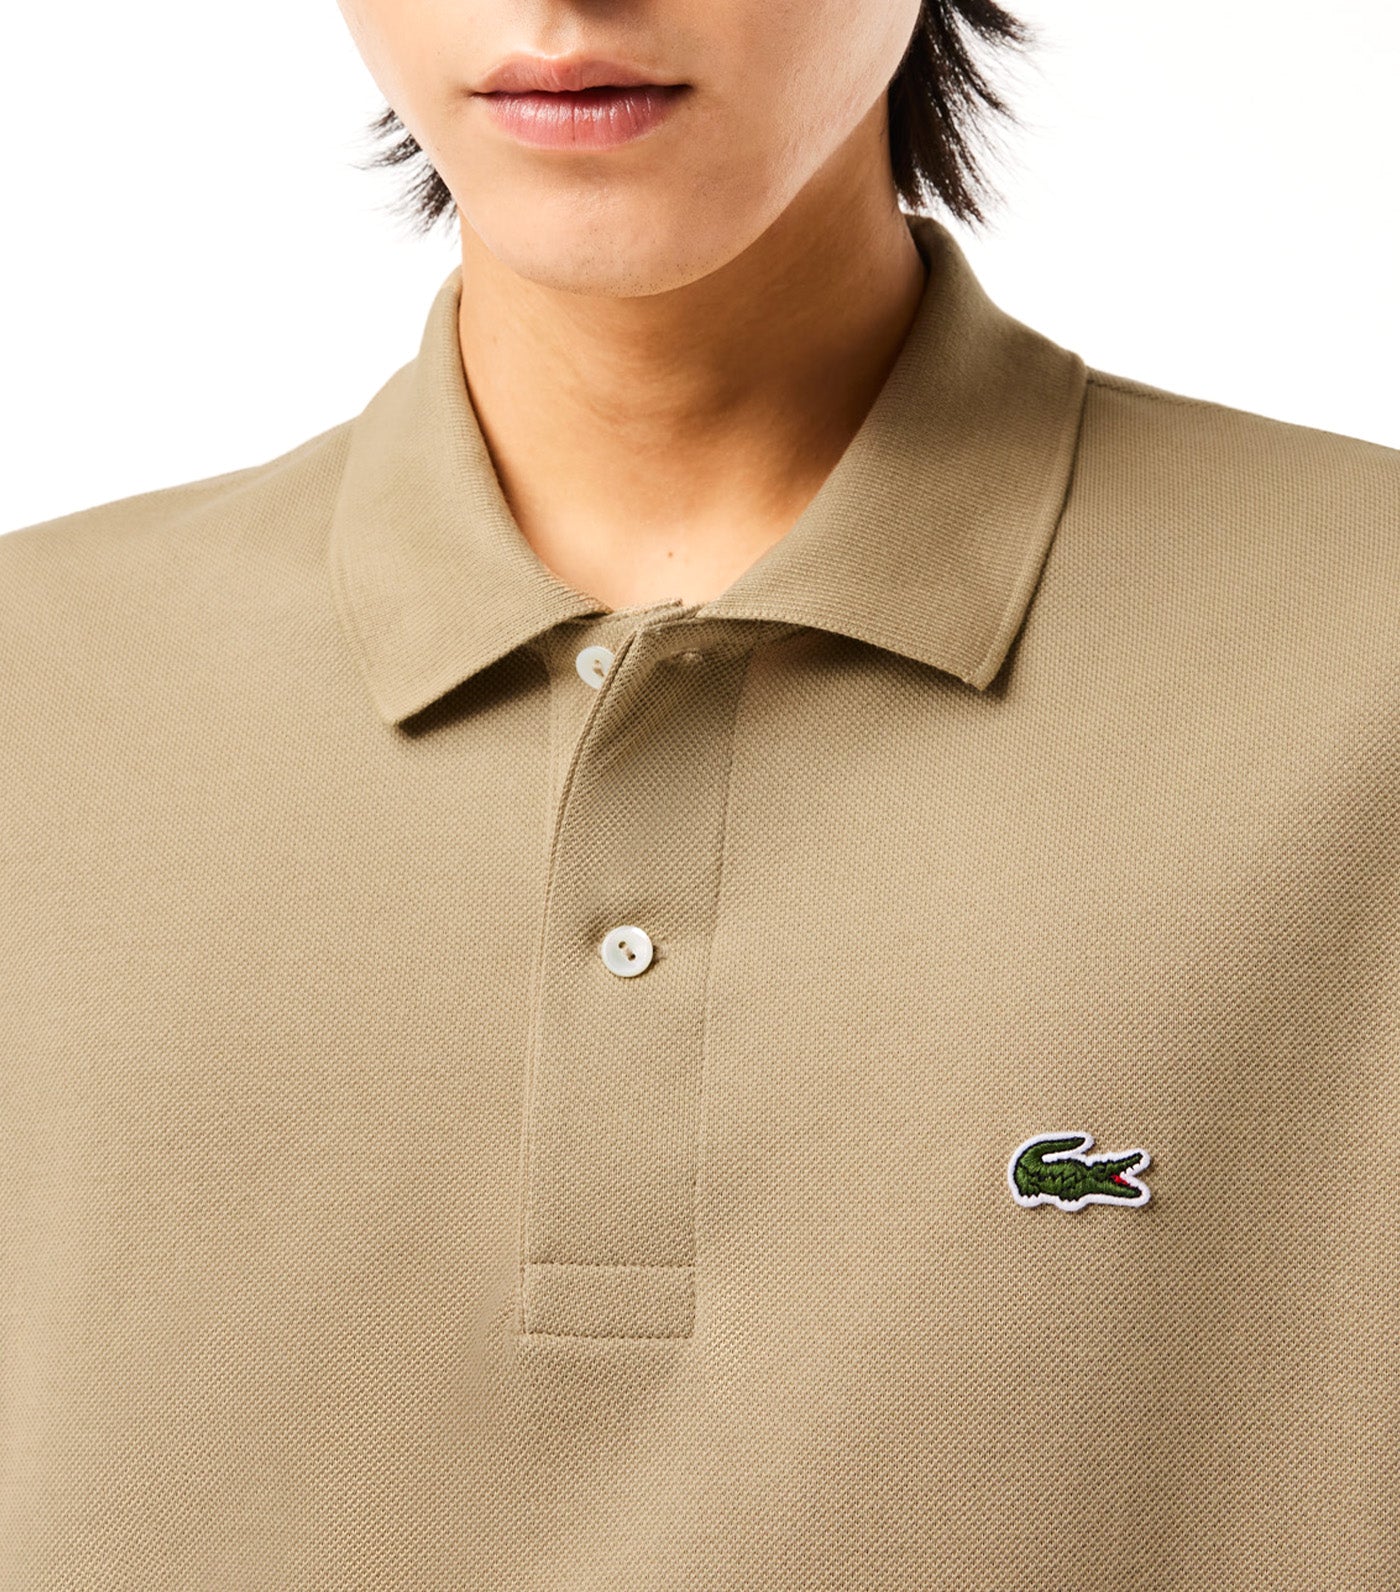 Lacoste Classic Fit L.12.12 Polo Shirt Lion